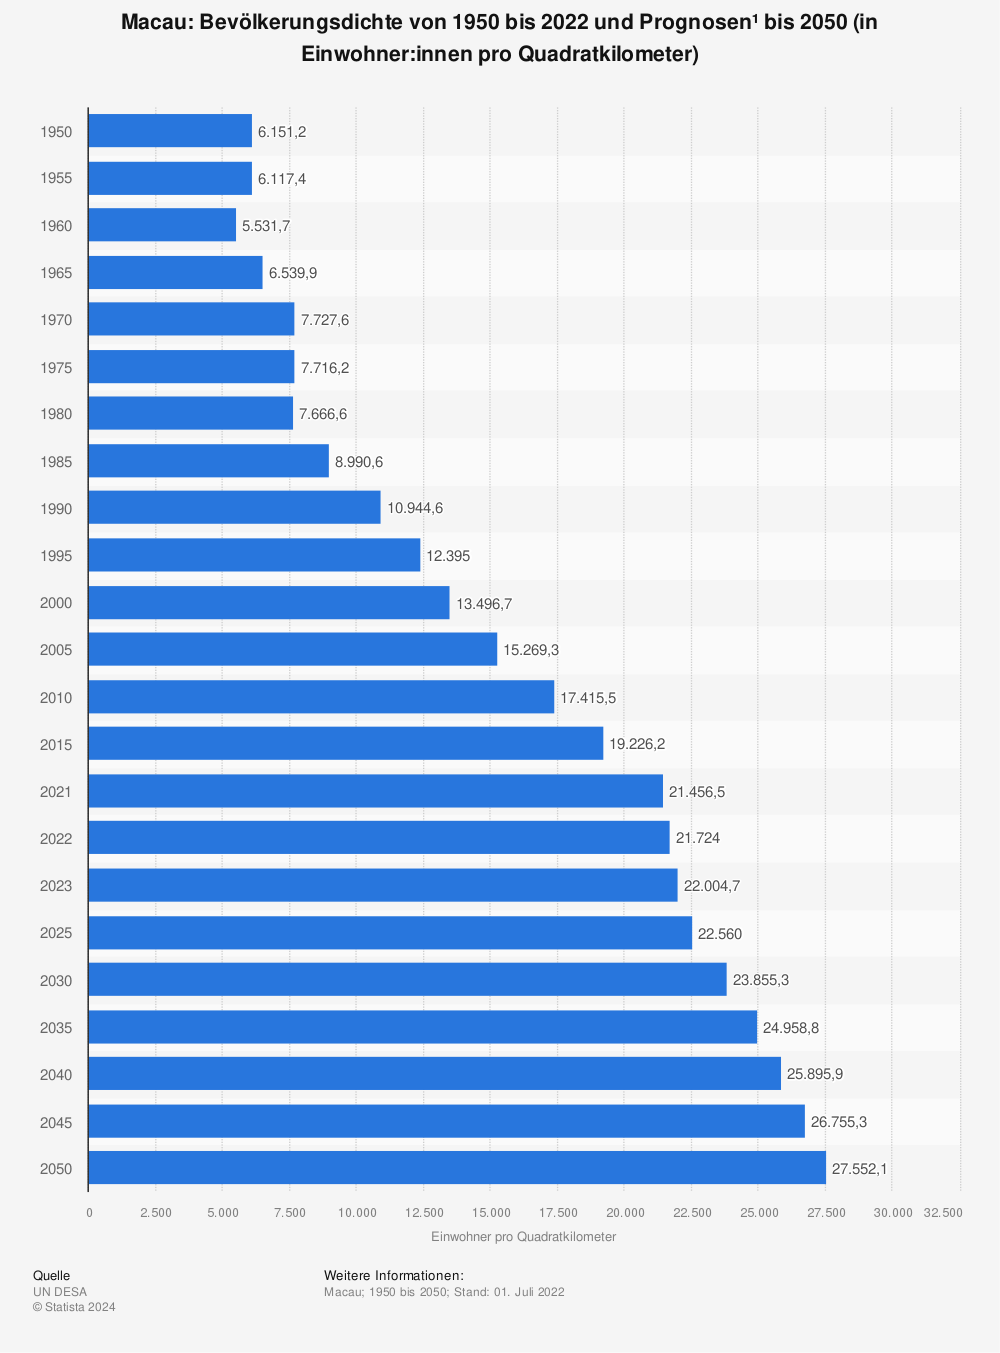 Statistik: Macau: Bevölkerungsdichte von 2011 bis 2021 (in Einwohner pro Quadratkilometer) | Statista